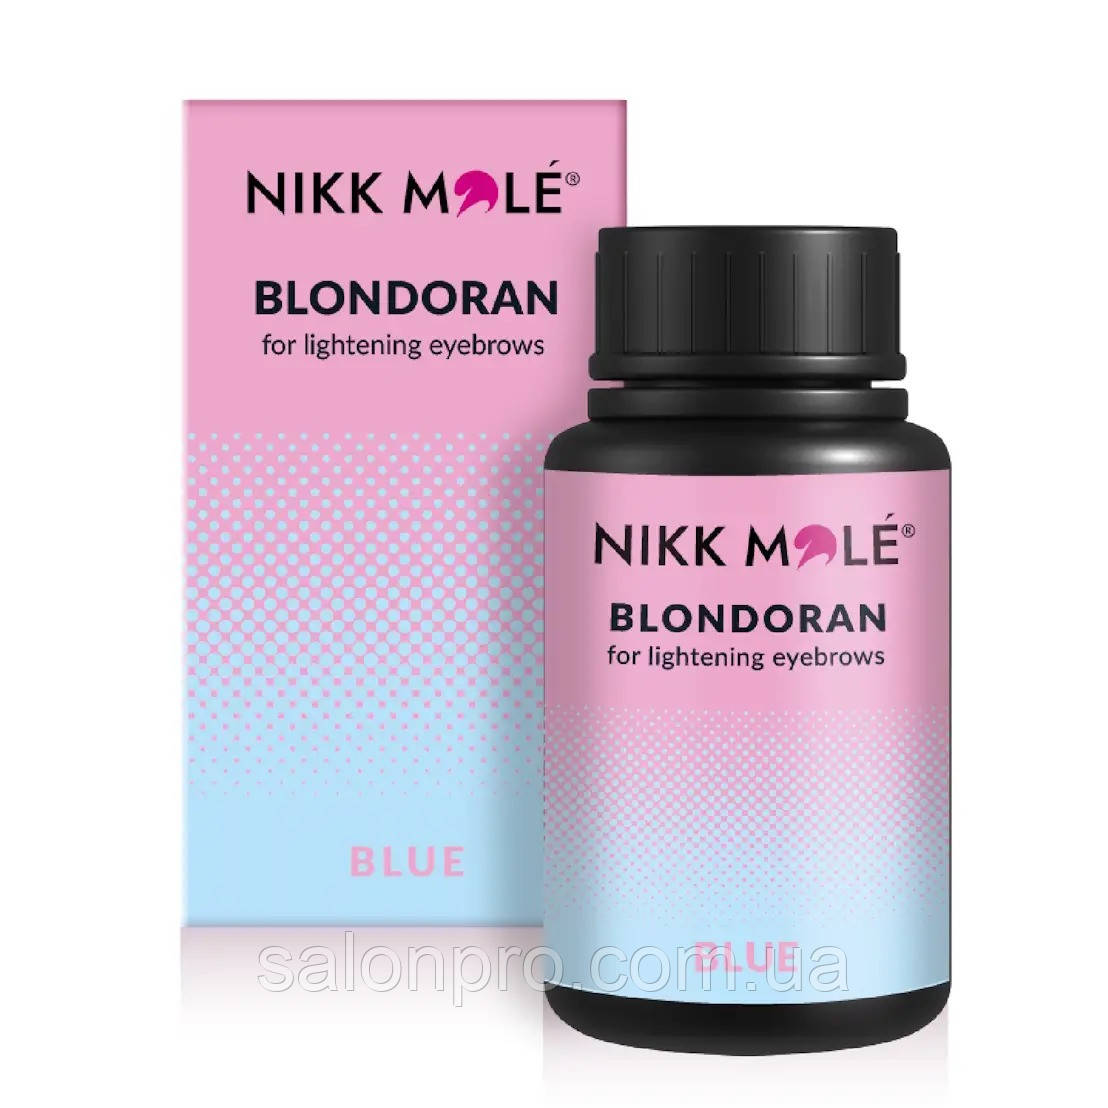 Nikk Mole Blondoran Blue — просвітлювальна пудра для брів, 20 г